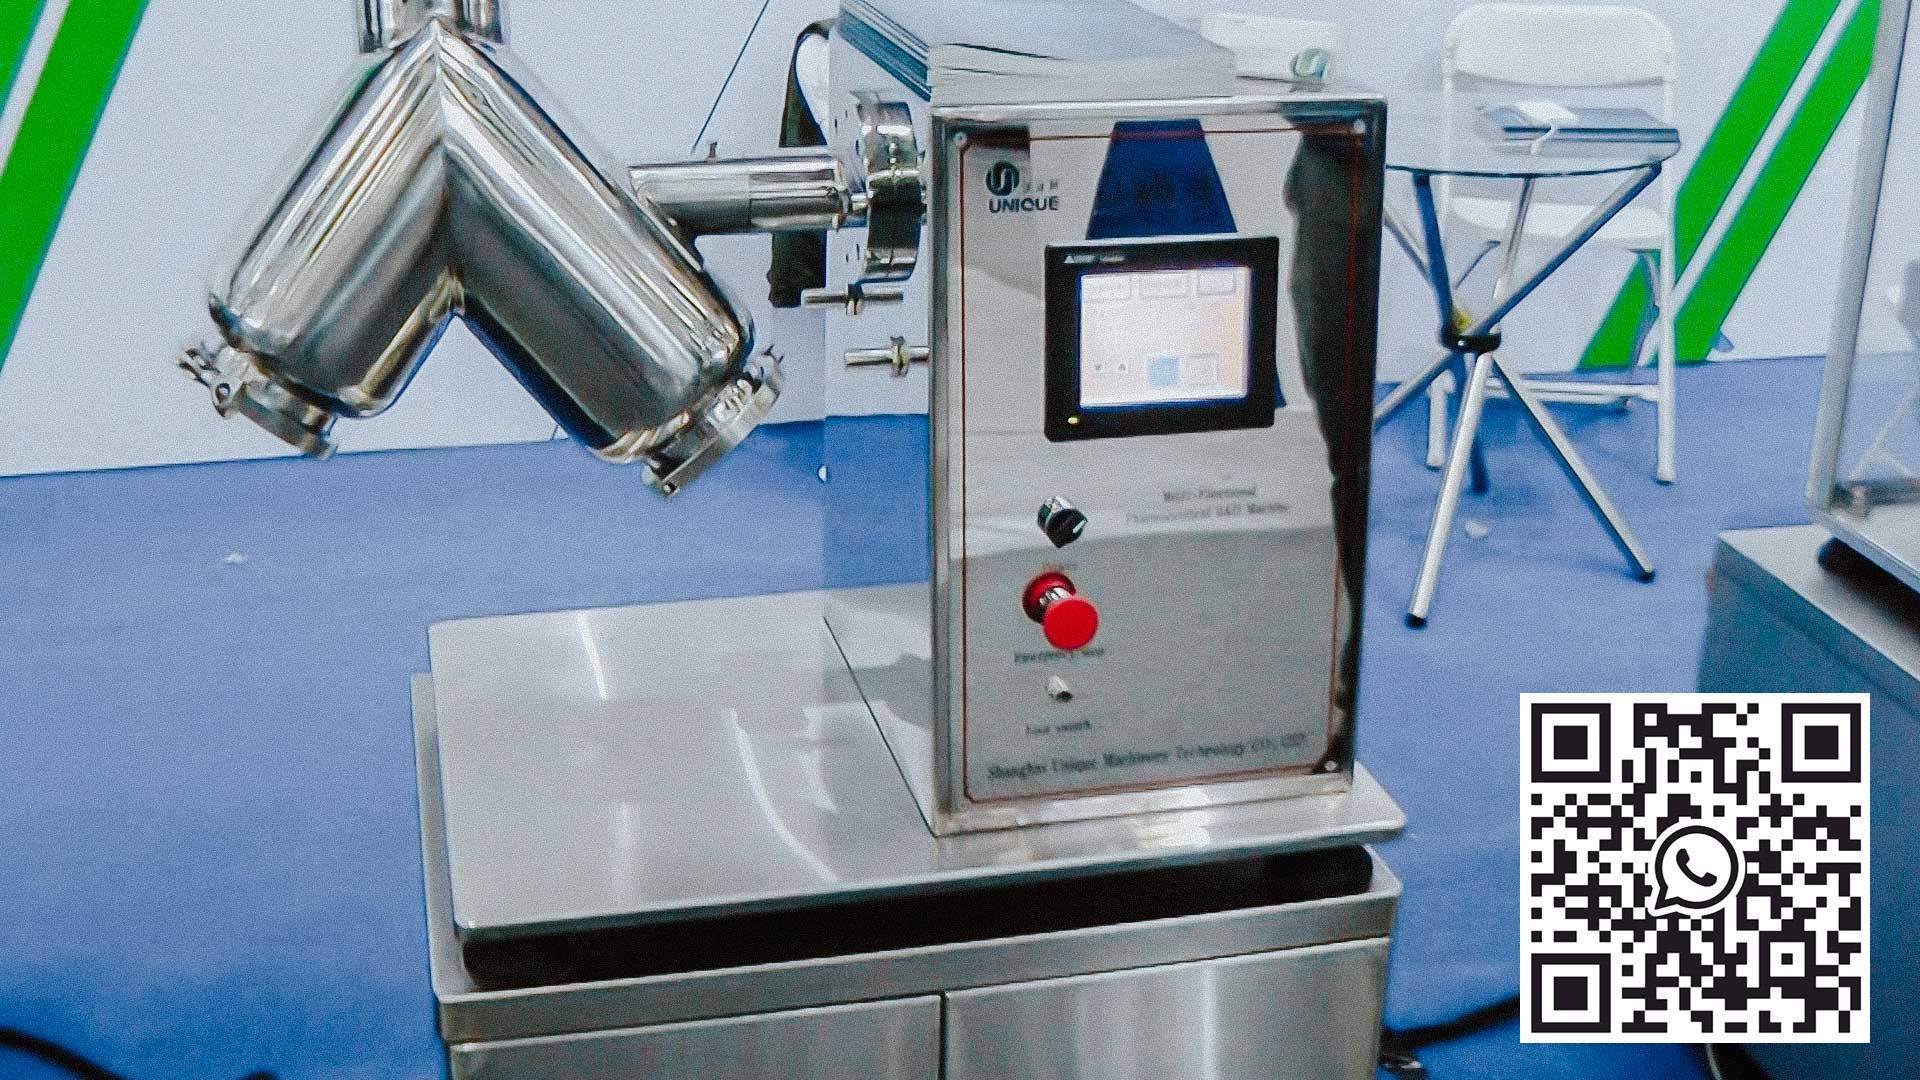 V-mixer لتحضير خليط من المساحيق المستخدمة في صناعة الأدوية